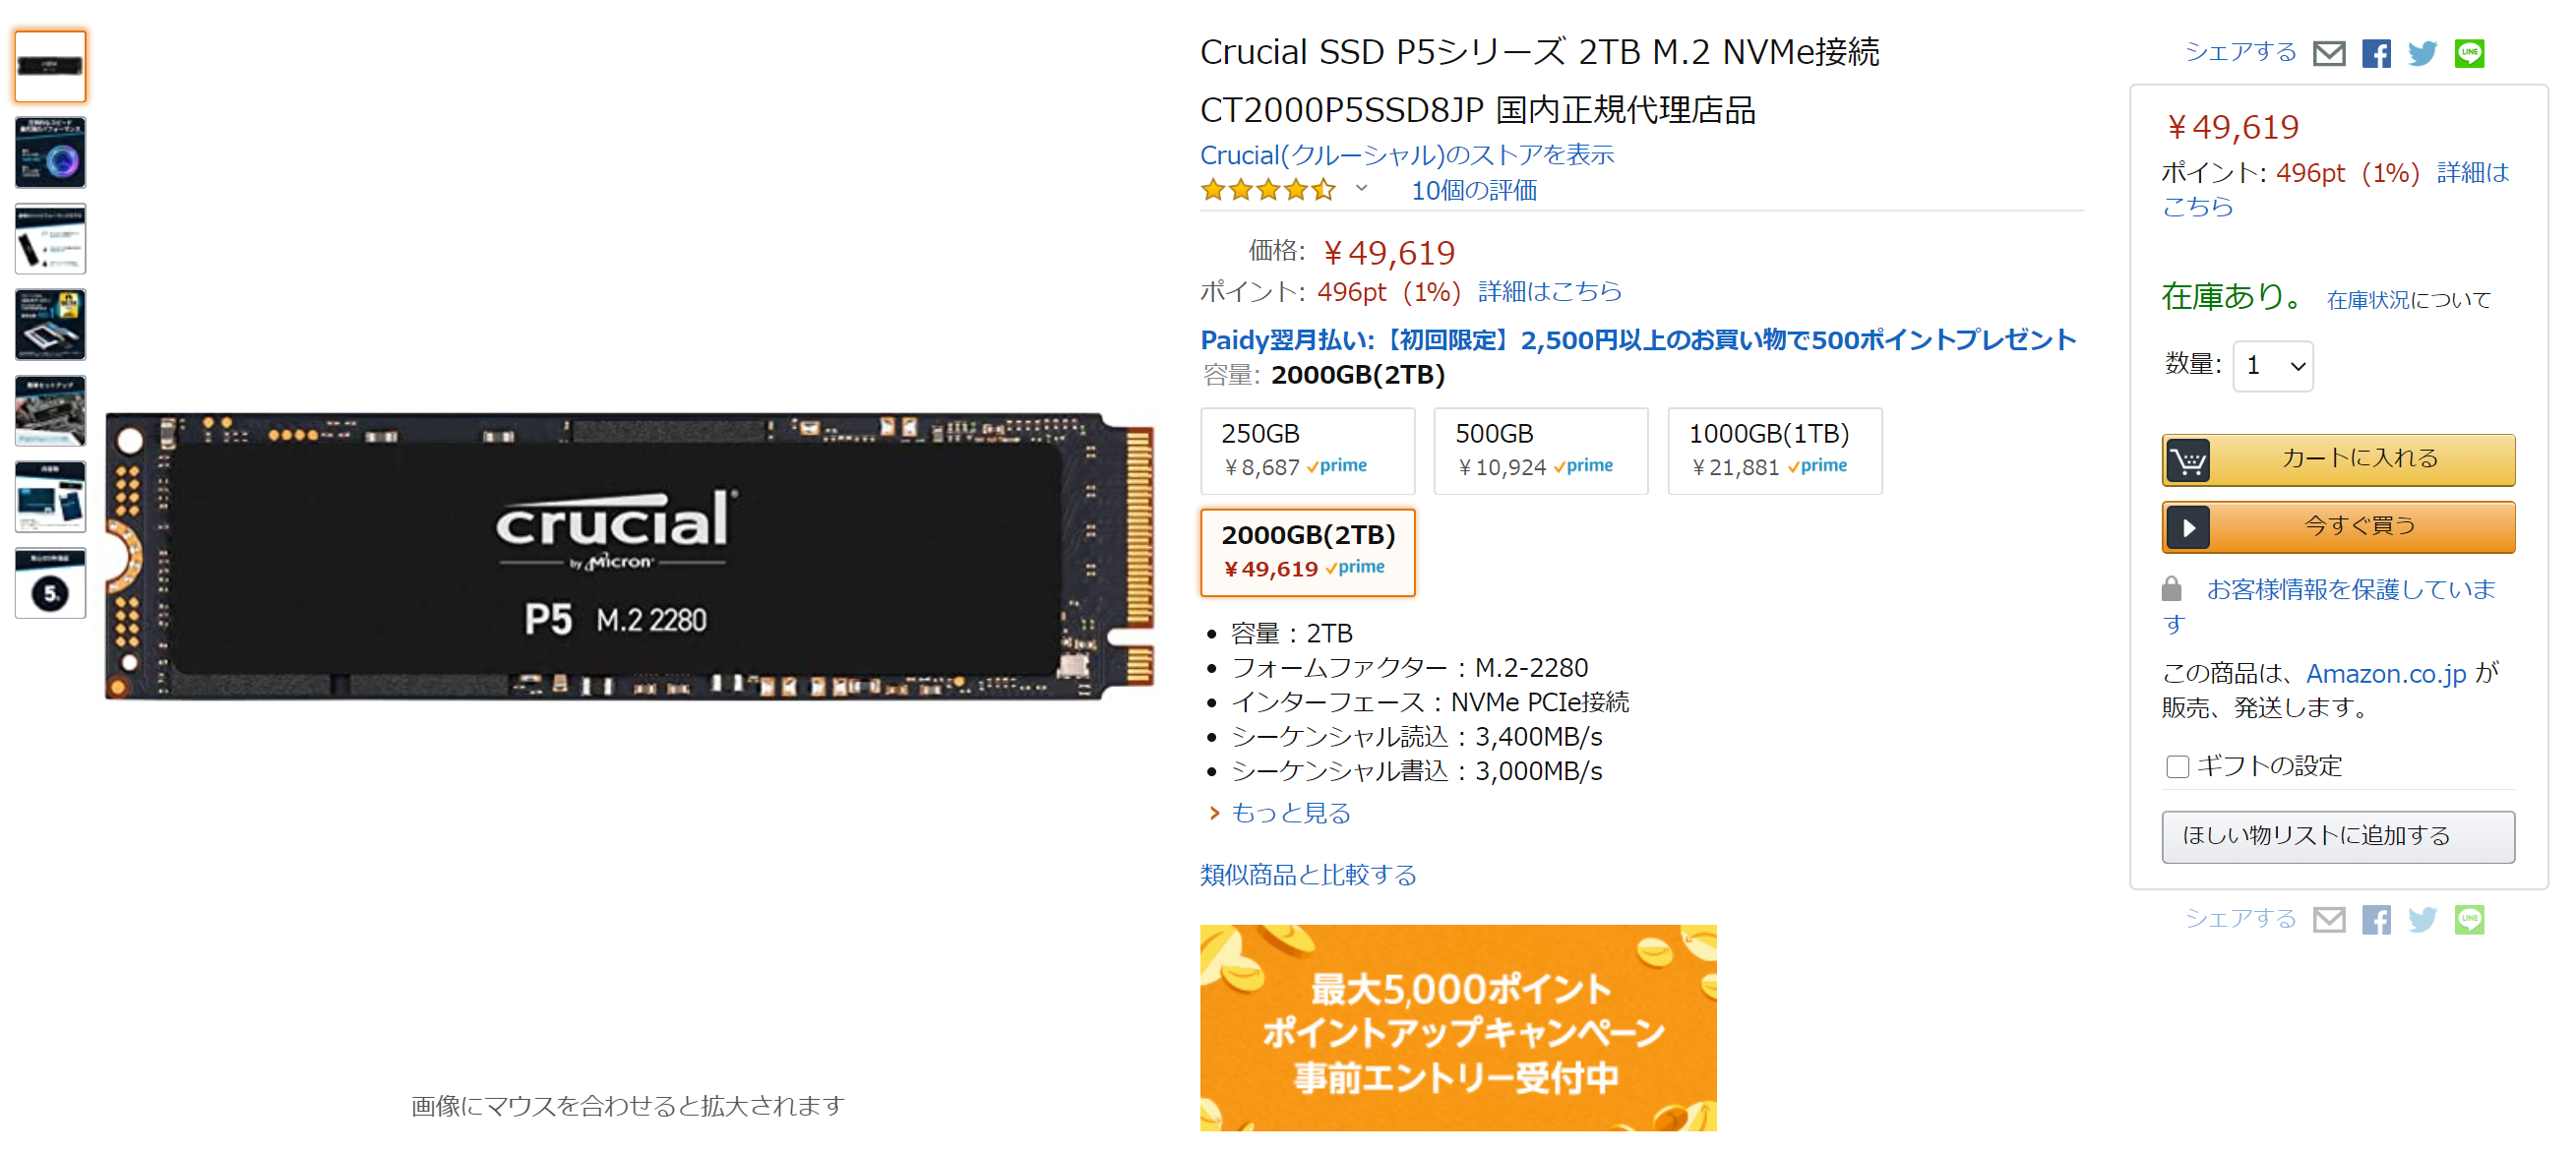 使用TLC闪存的英睿达P5系列NVMe M.2 SSD现已公布售价